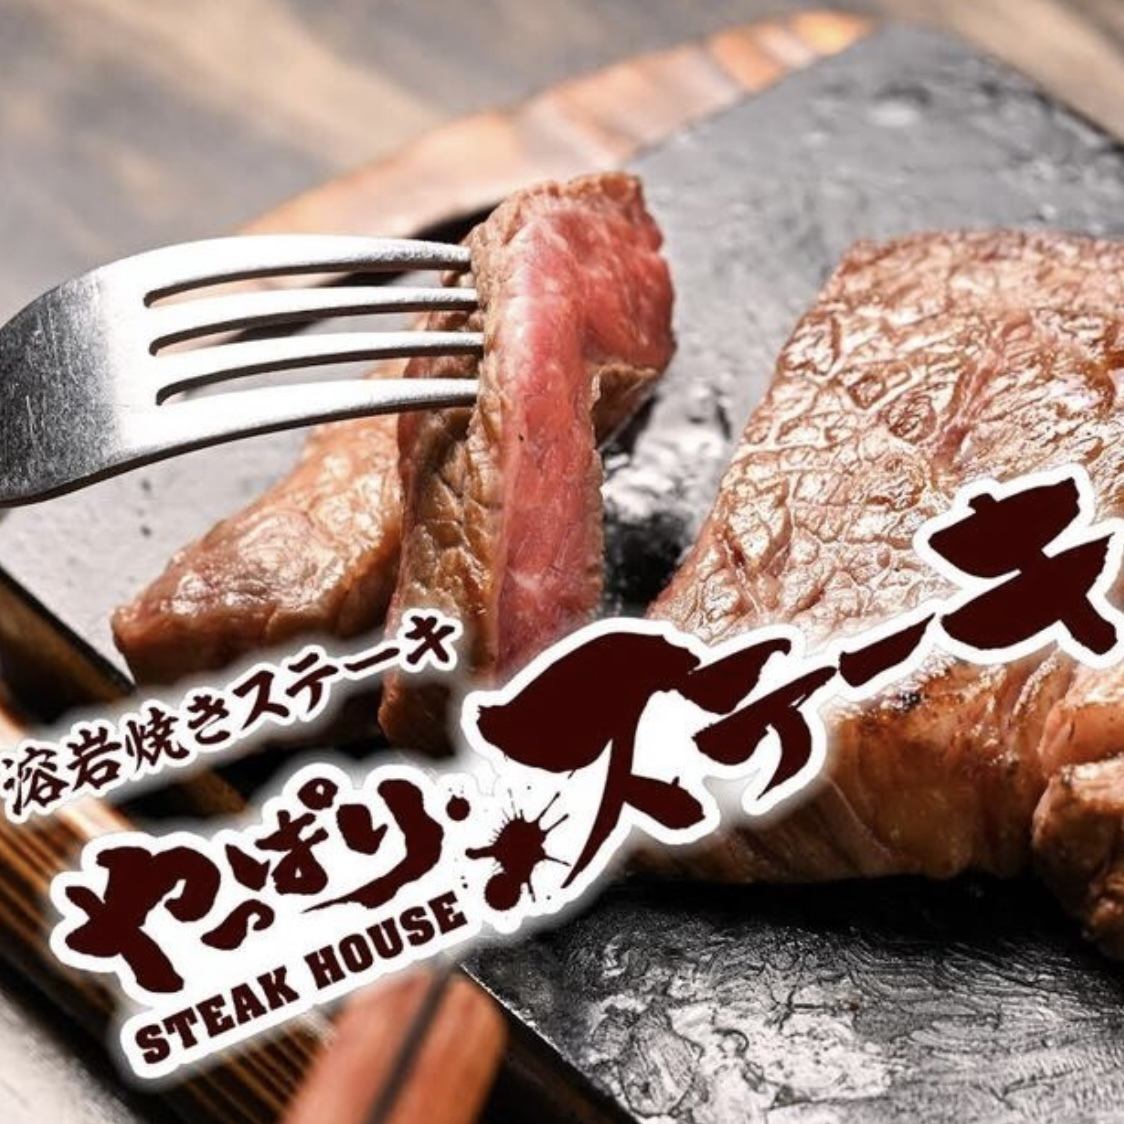 ステーキらしい美味しさと楽しさに、とことんこだわるやっぱりステーキが神田に登場！